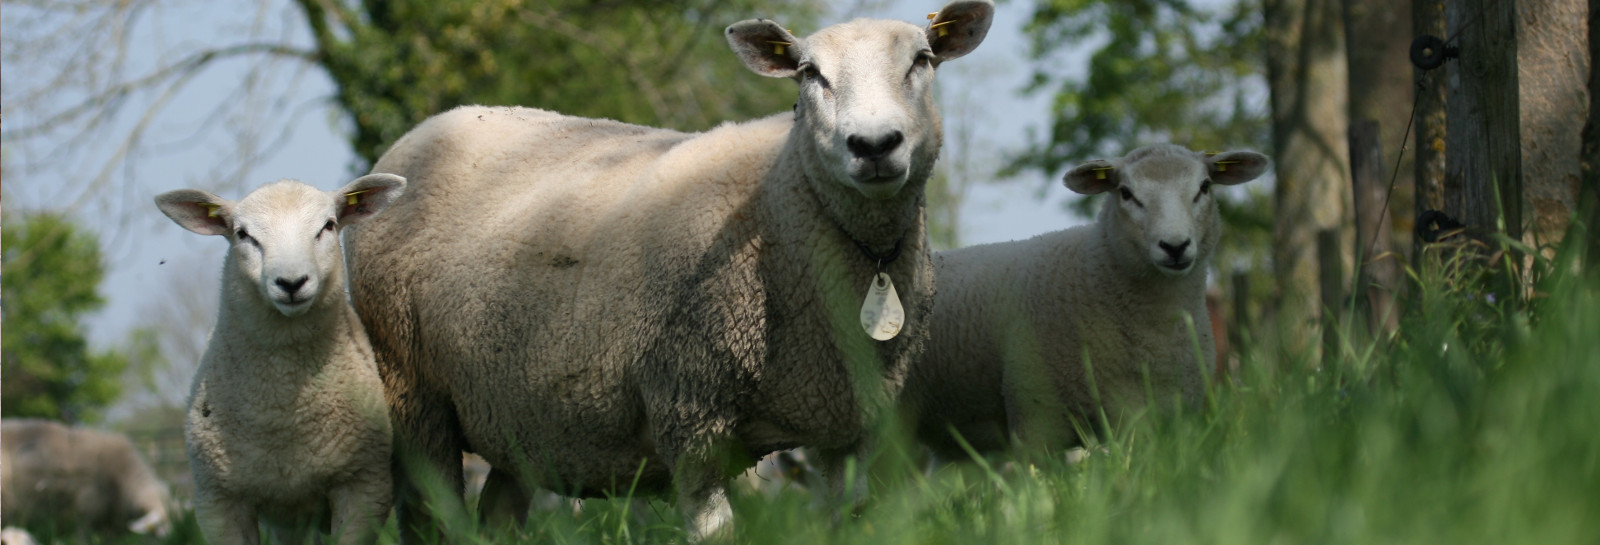 Племенные овцы (ярочки и баранчики) из стран ЕС